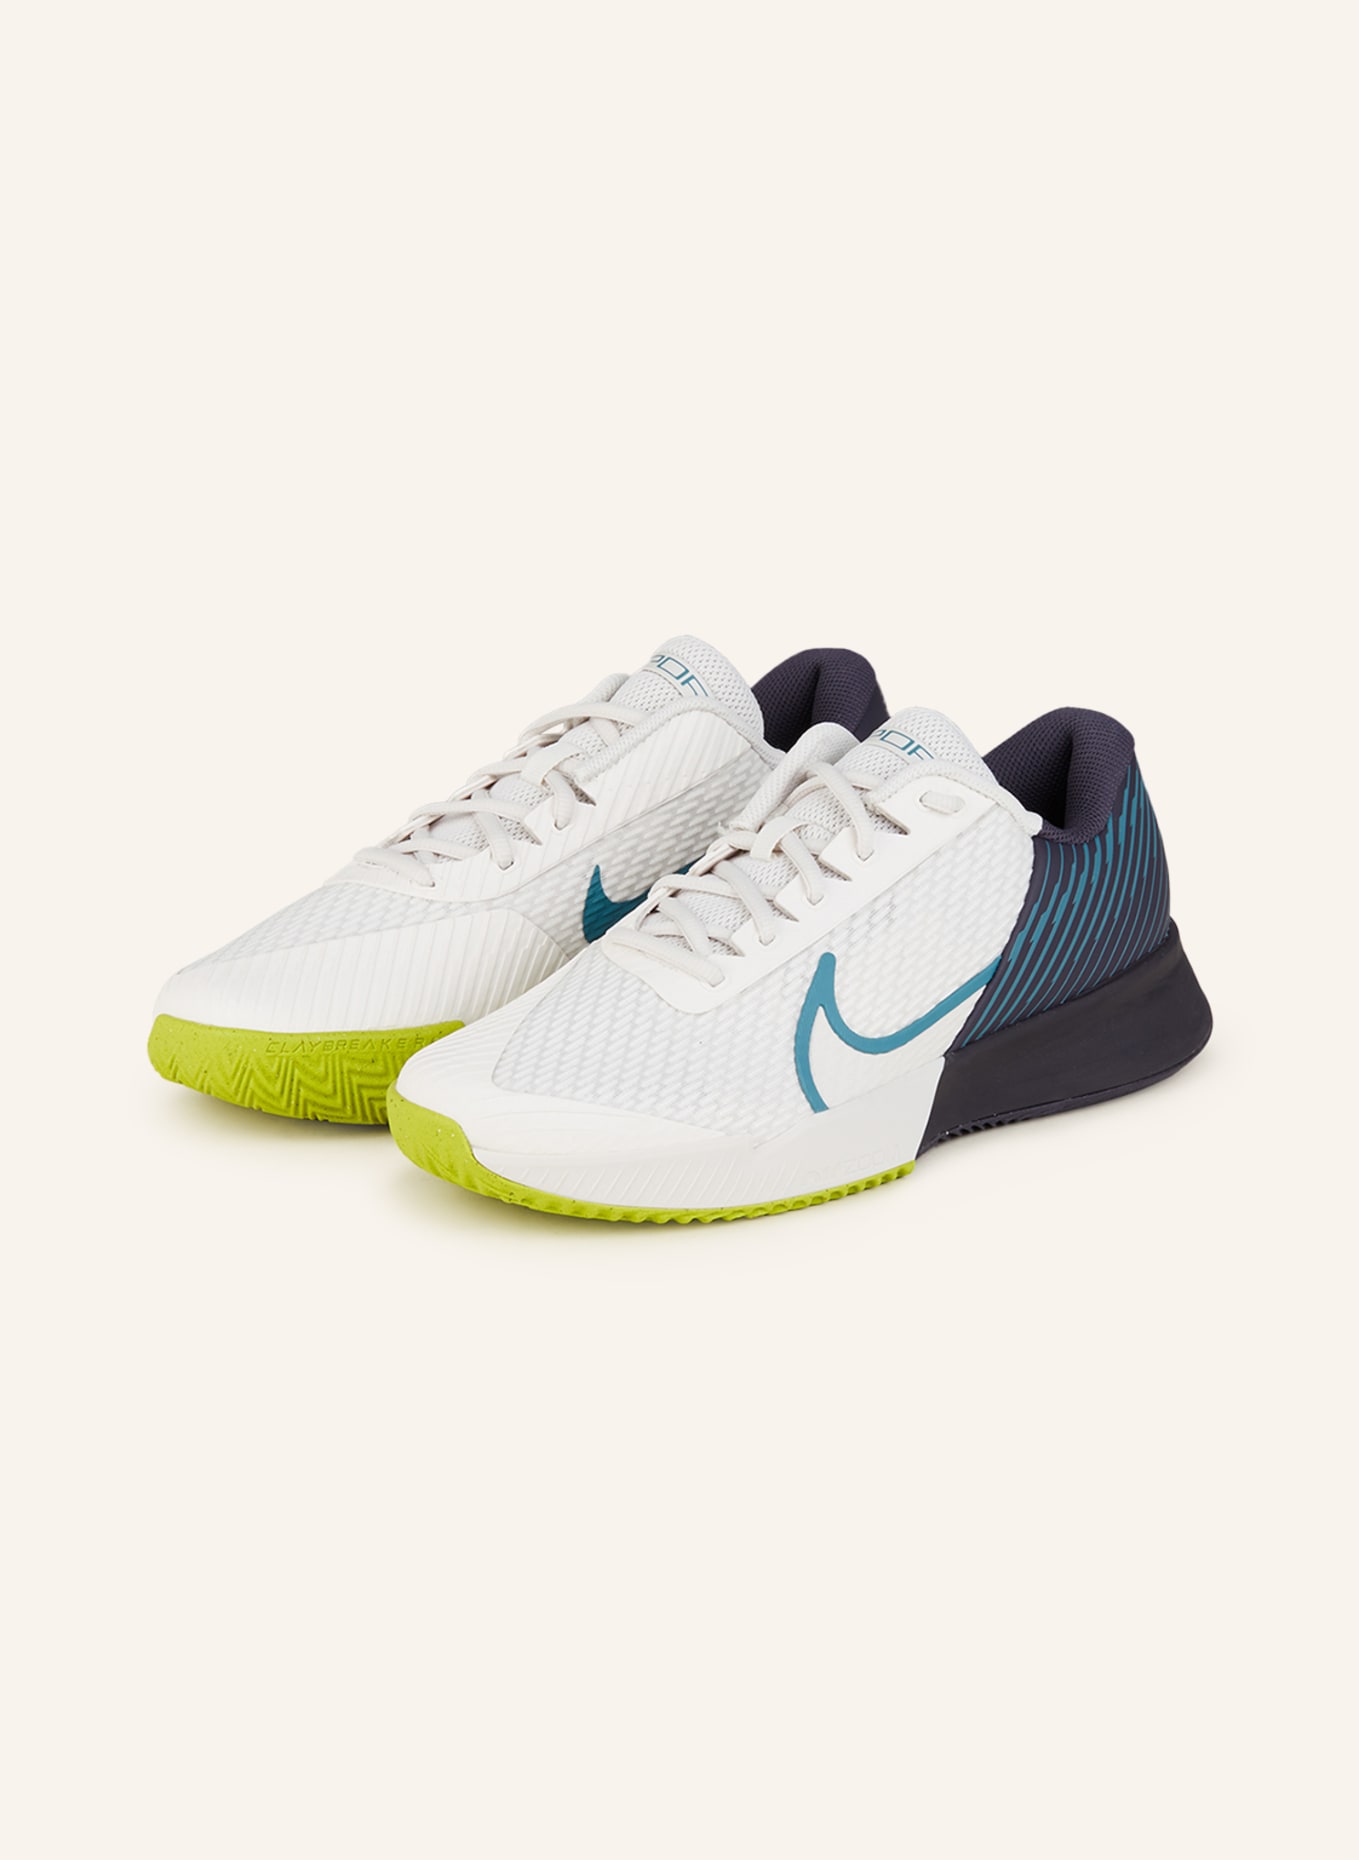 Nike Tennisschuhe COURT AIR ZOOM VAPOR PRO 2 in weiss/ dunkelblau